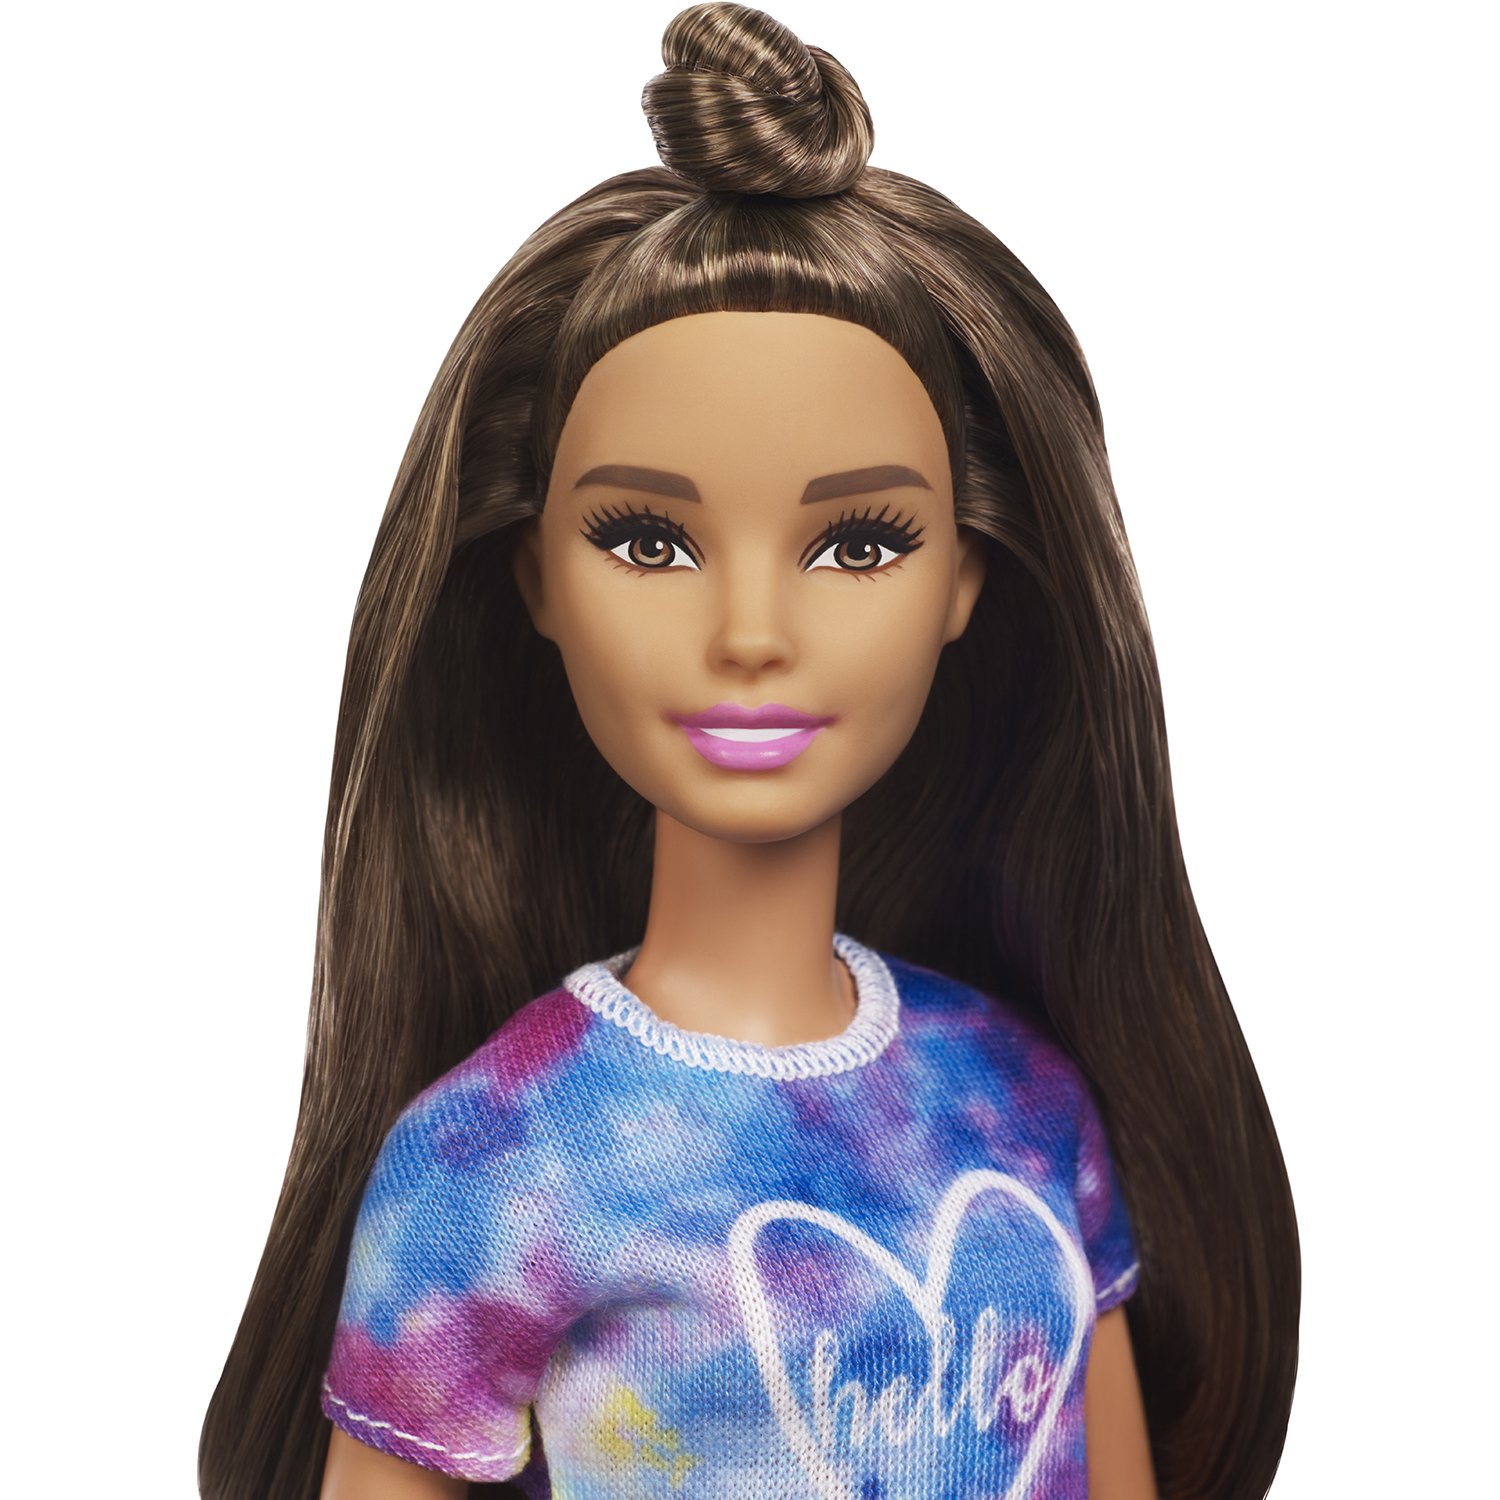 Кукла Barbie Игра с модой Миниатюрная брюнетка, 28 см, FYB31